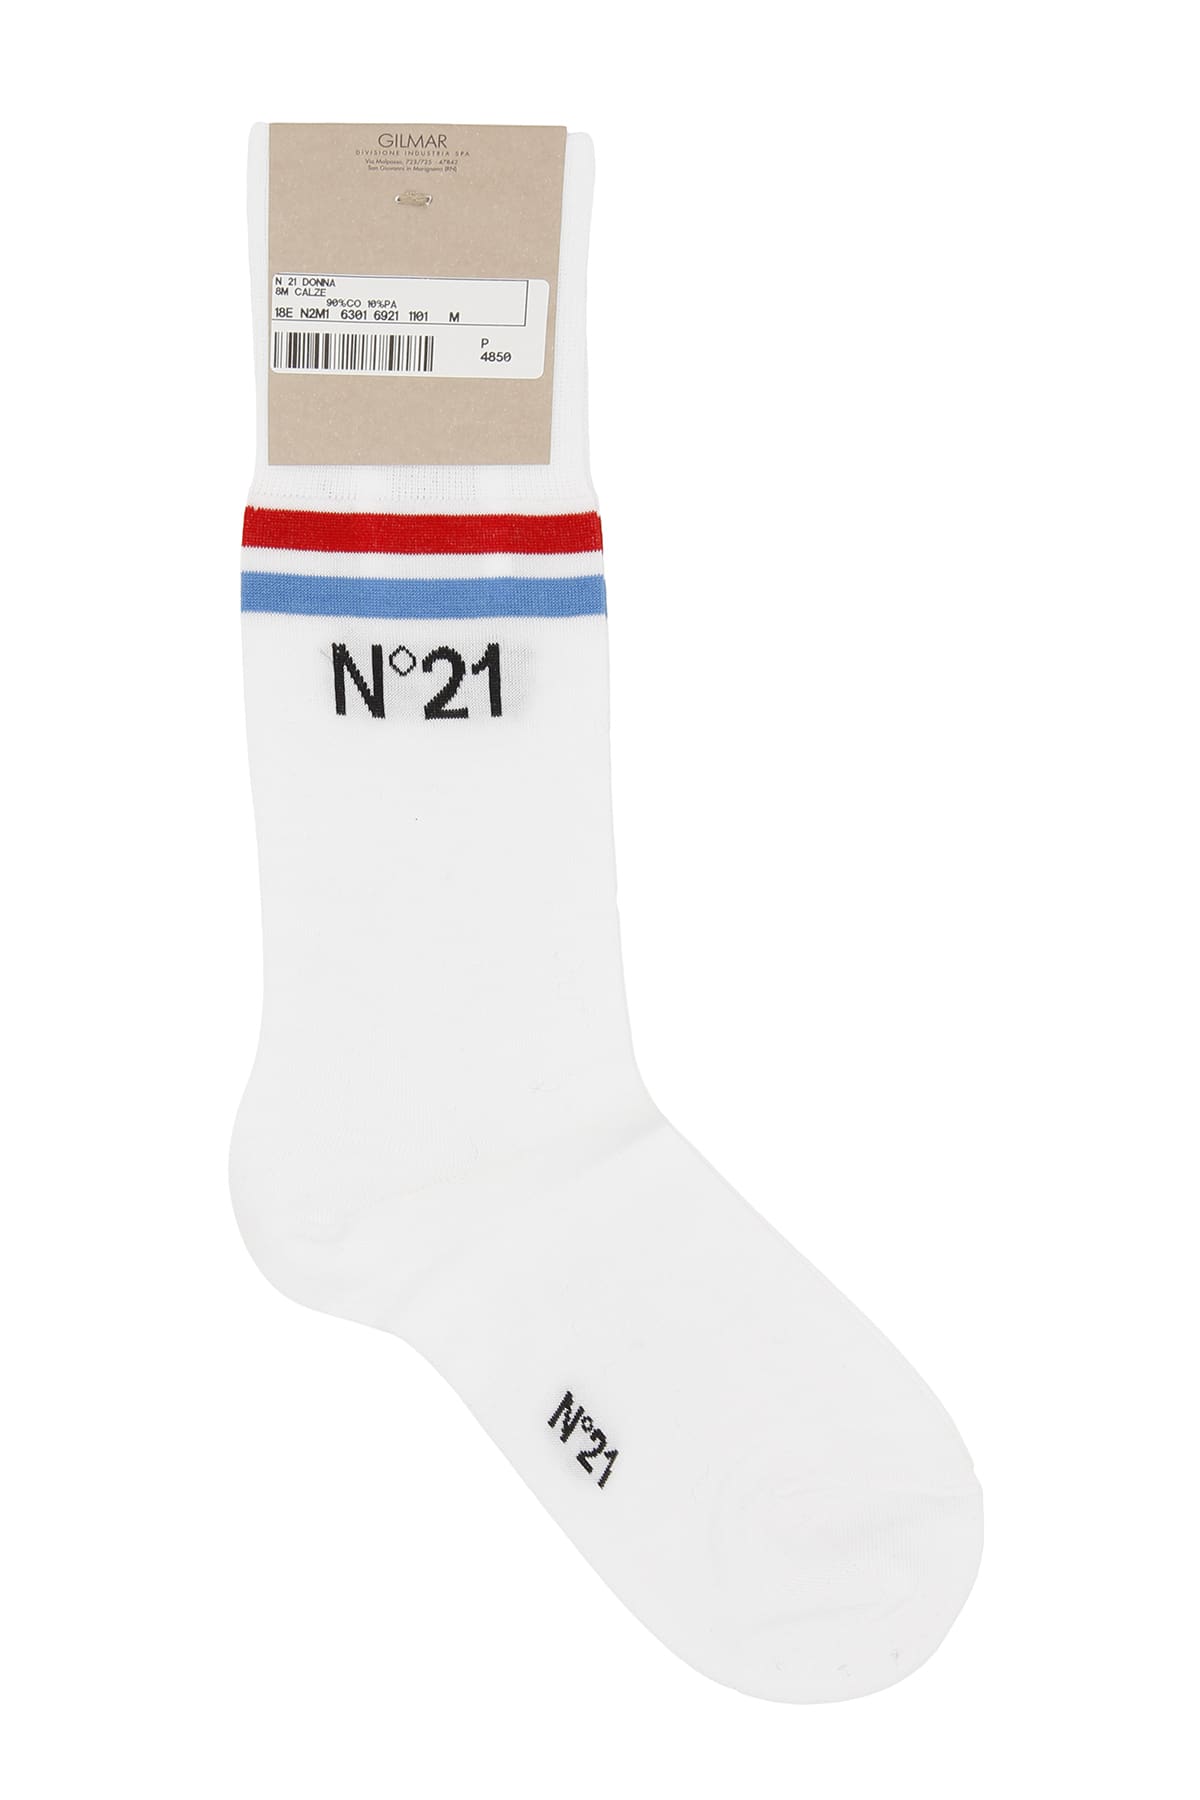 N.21 Medium Cotton Socks